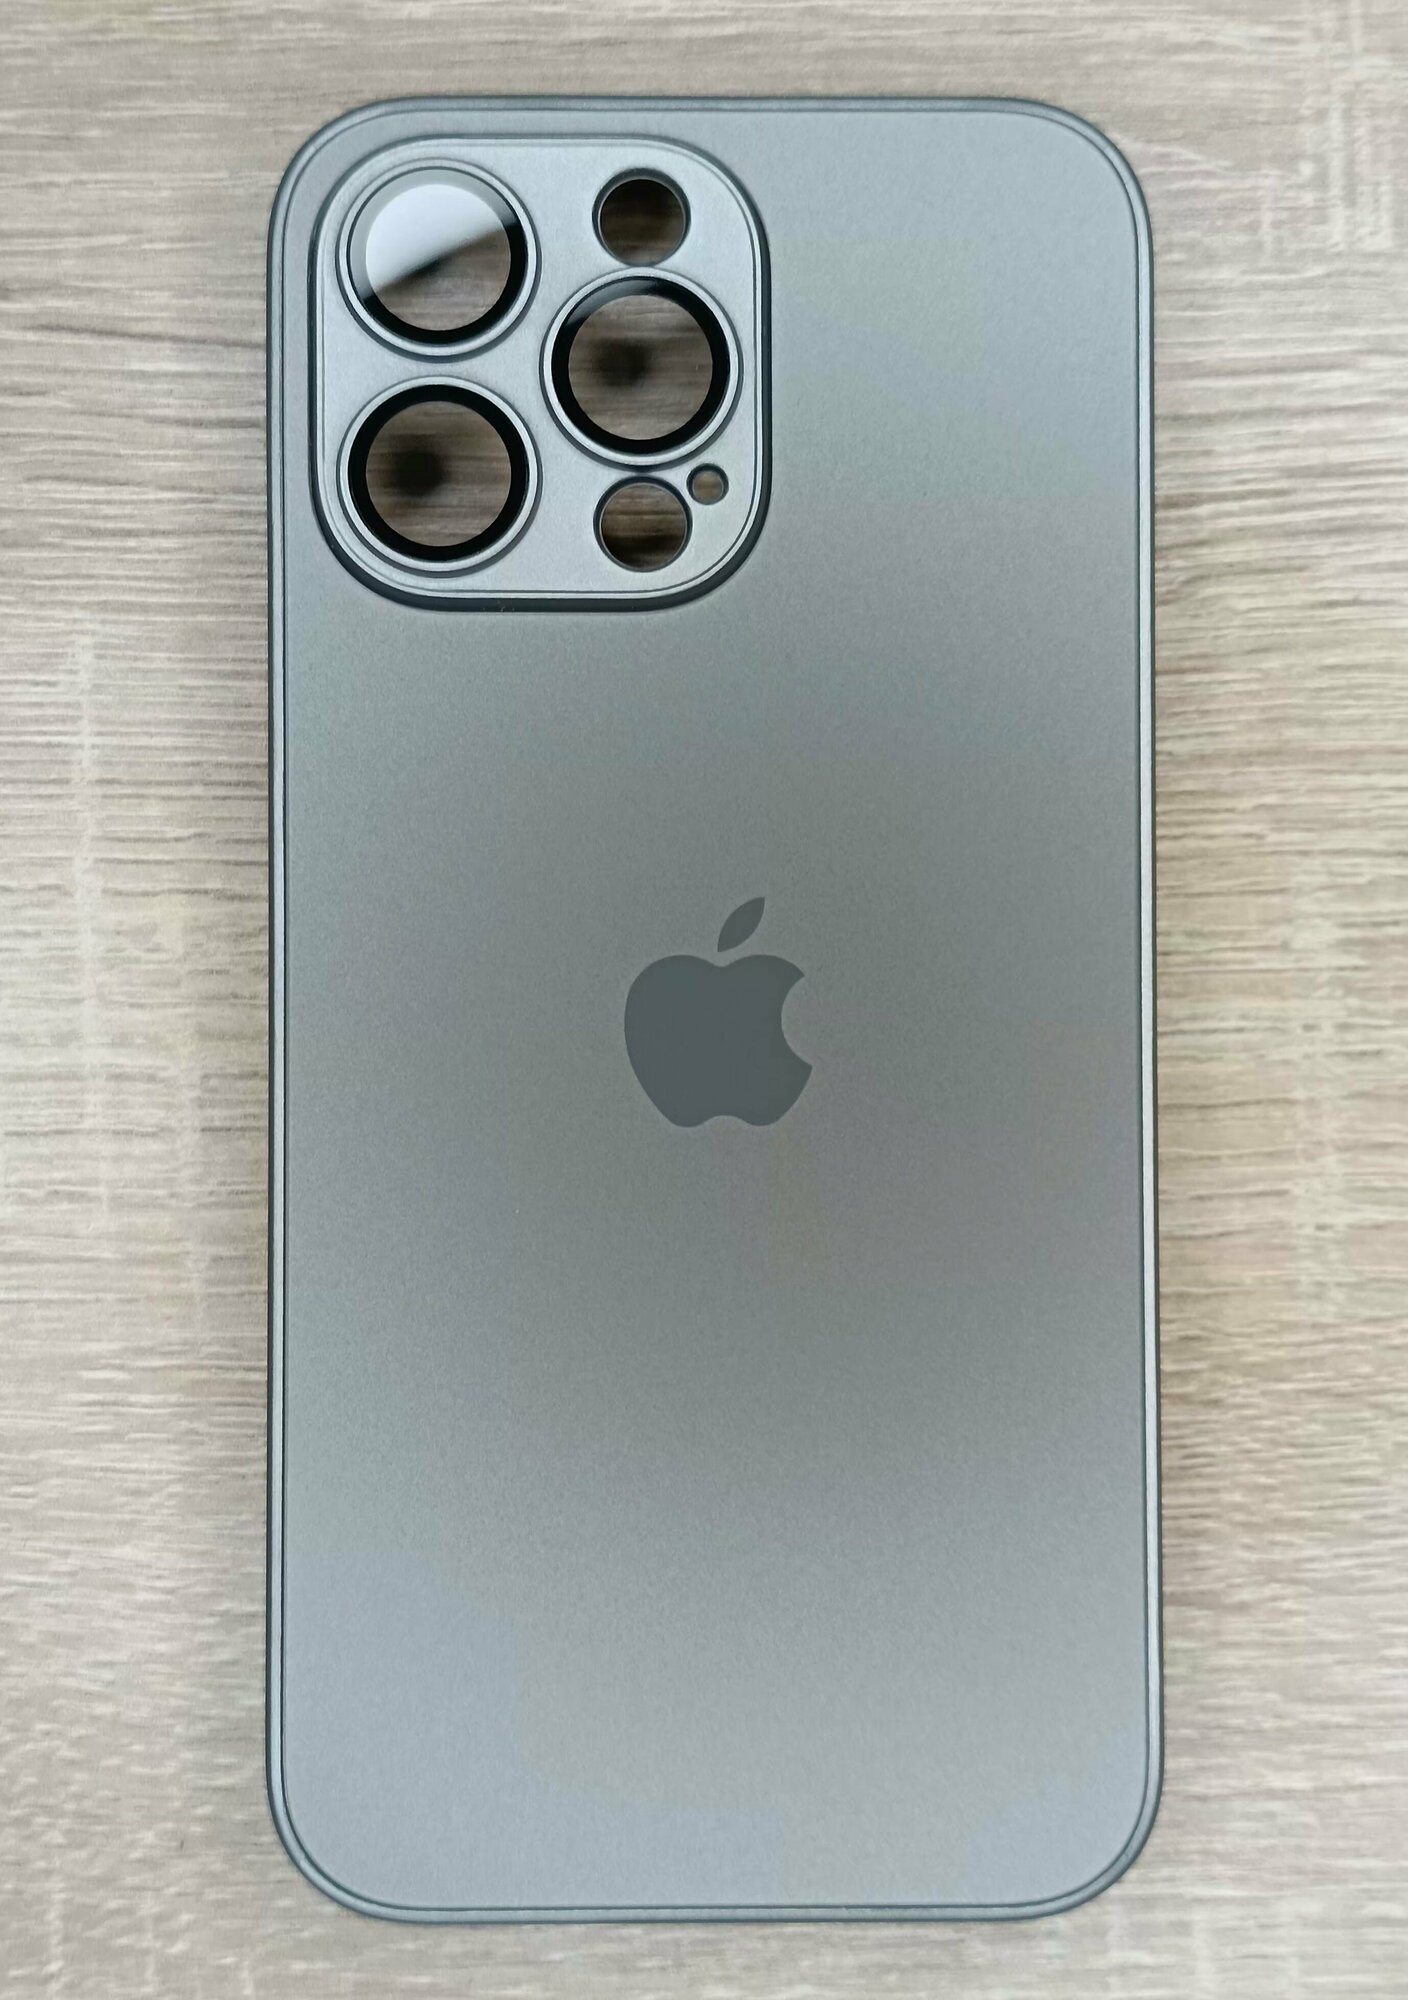 Чехол для Apple iPhone 15 Pro Max с поддержкой MagSafe, Titanium gray